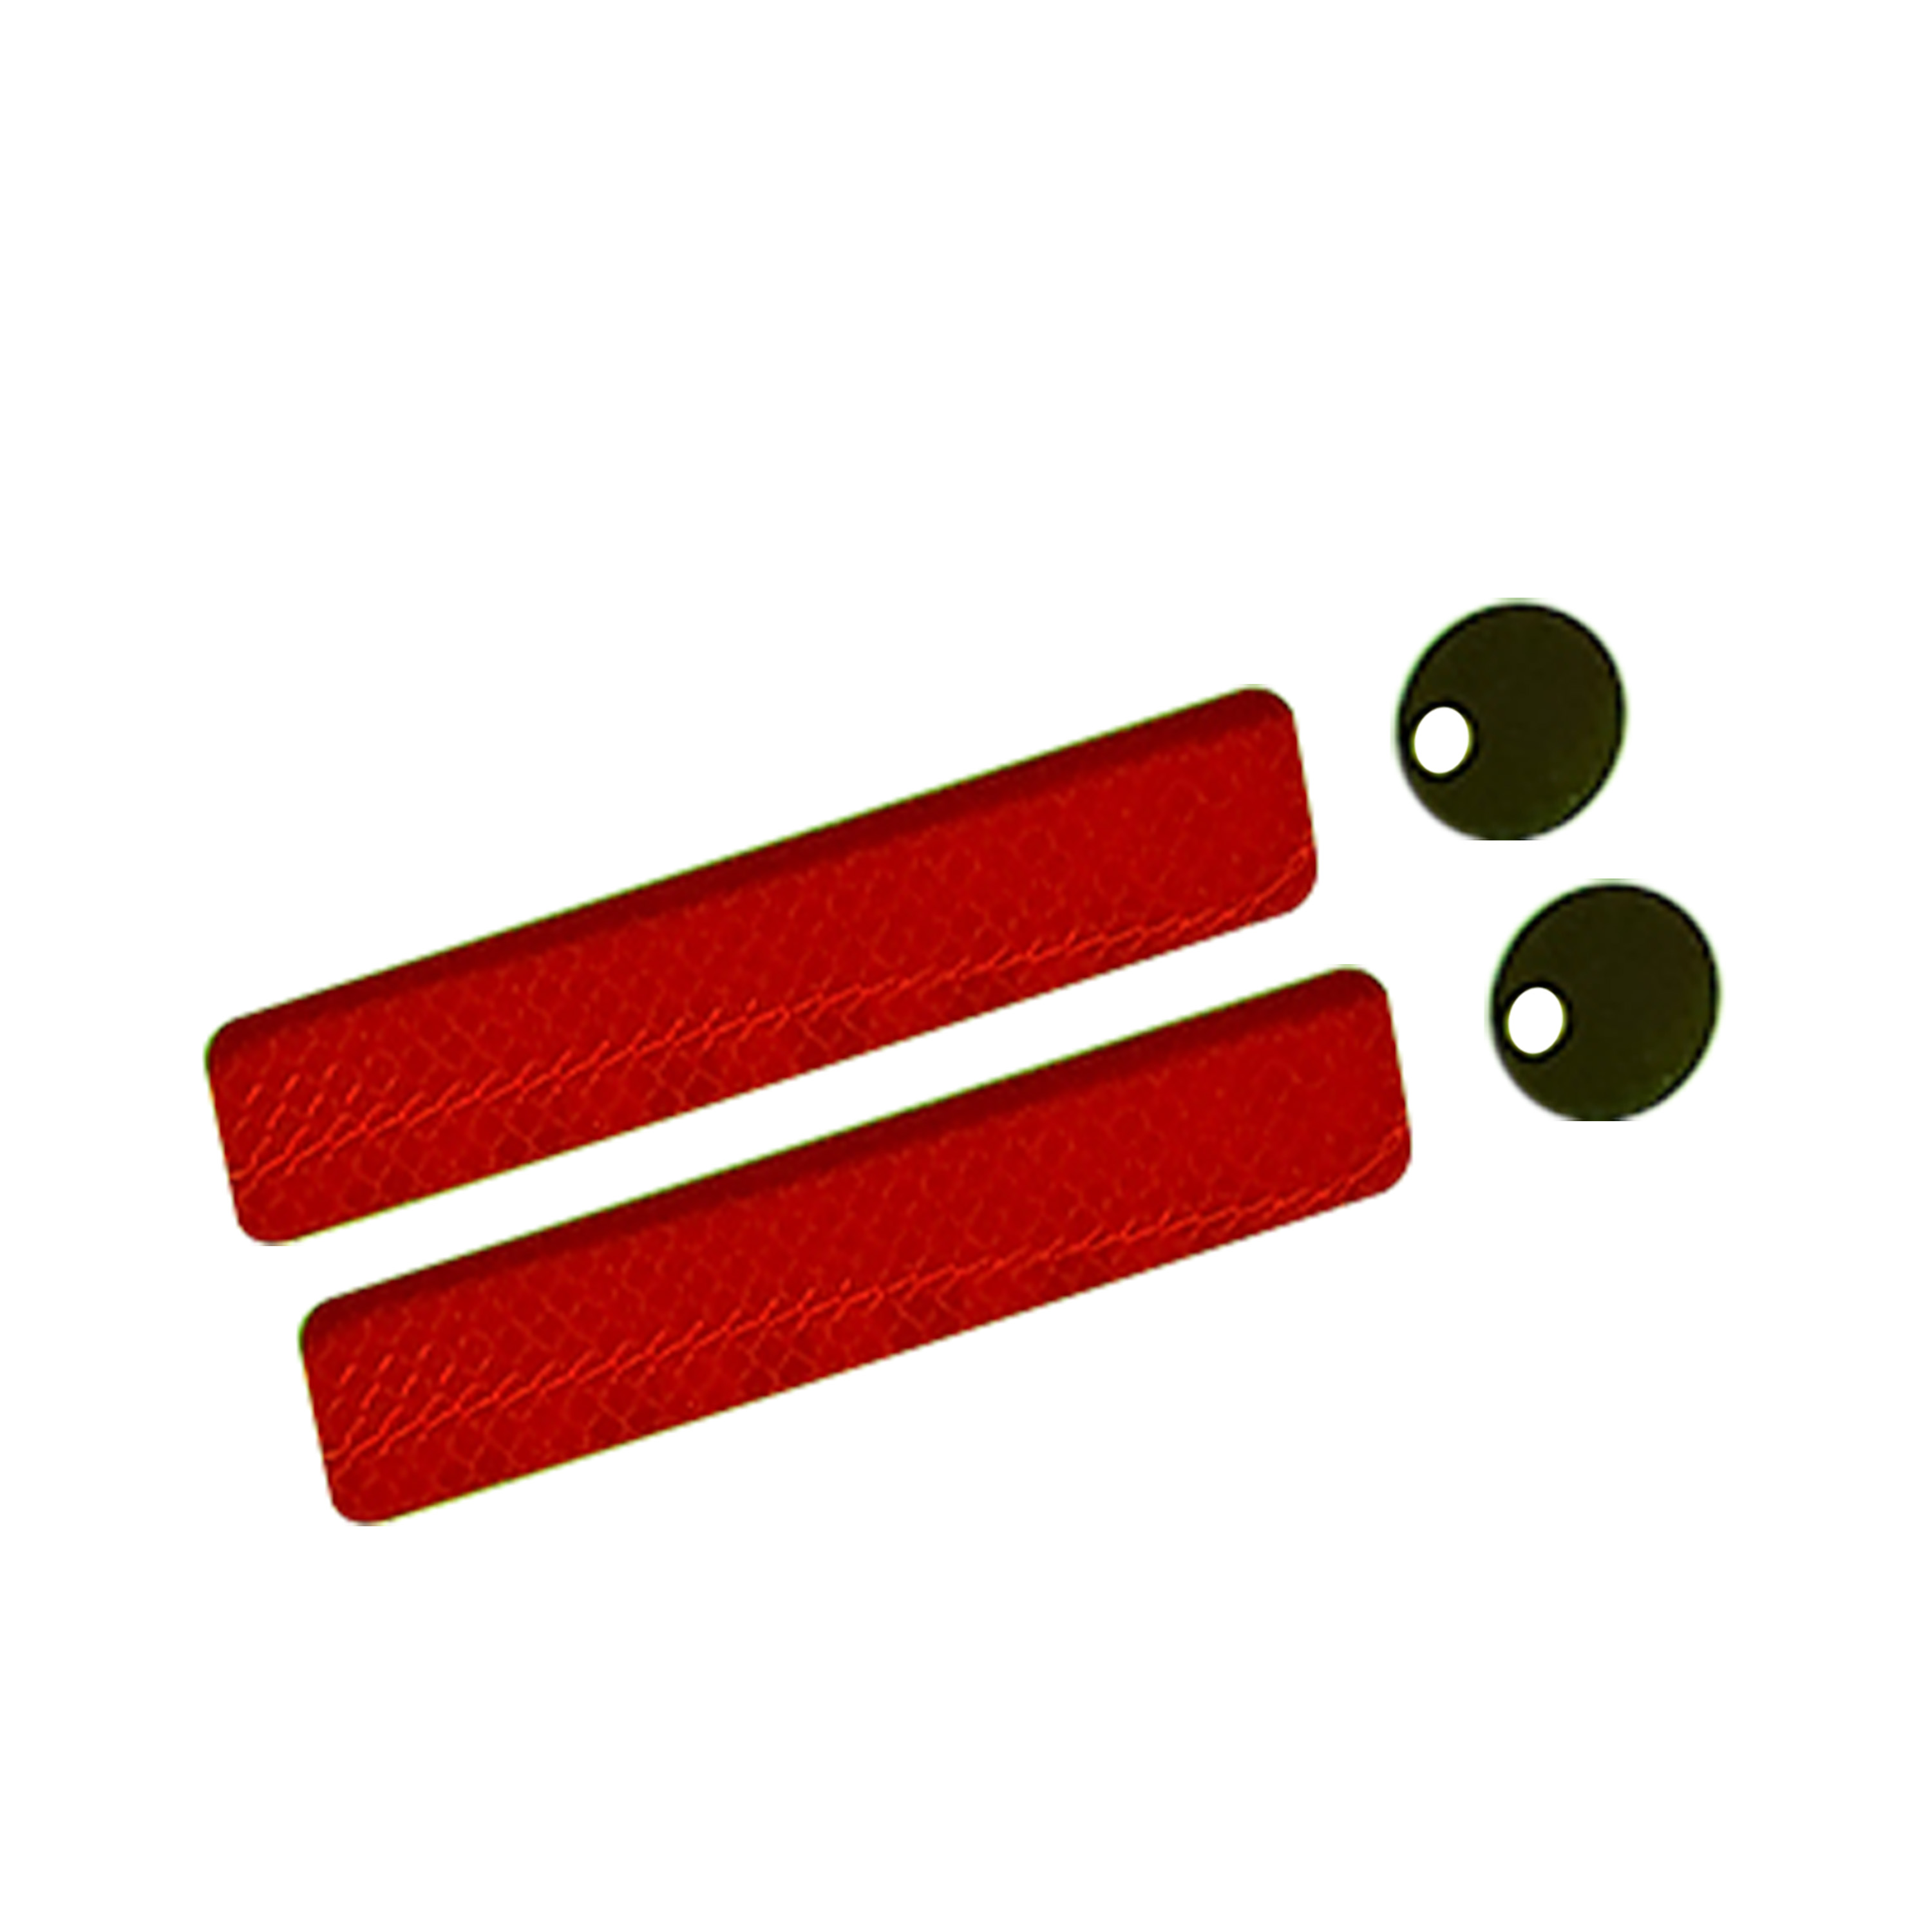 Benni Brems - Sticker Auge und roter Streifen - 2er Set